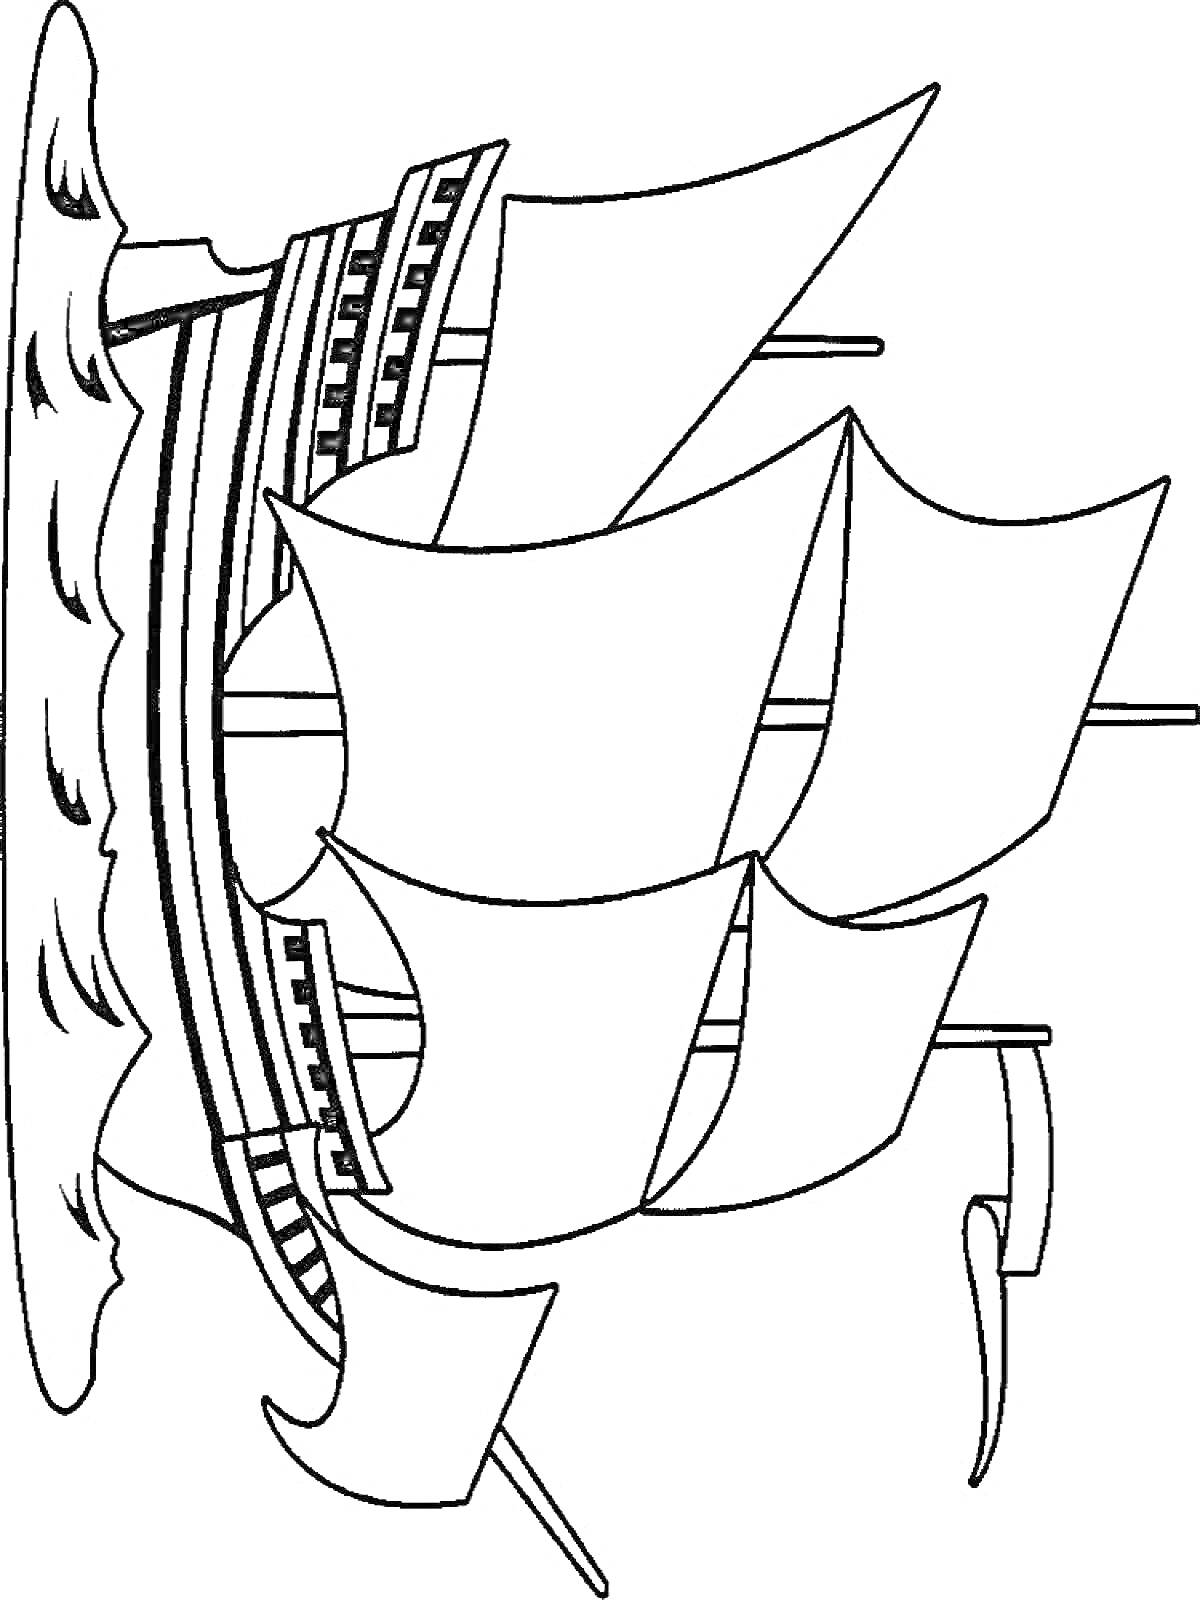 Раскраска Парусный корабль с тремя мачтами и развевающимися парусами на морской волне